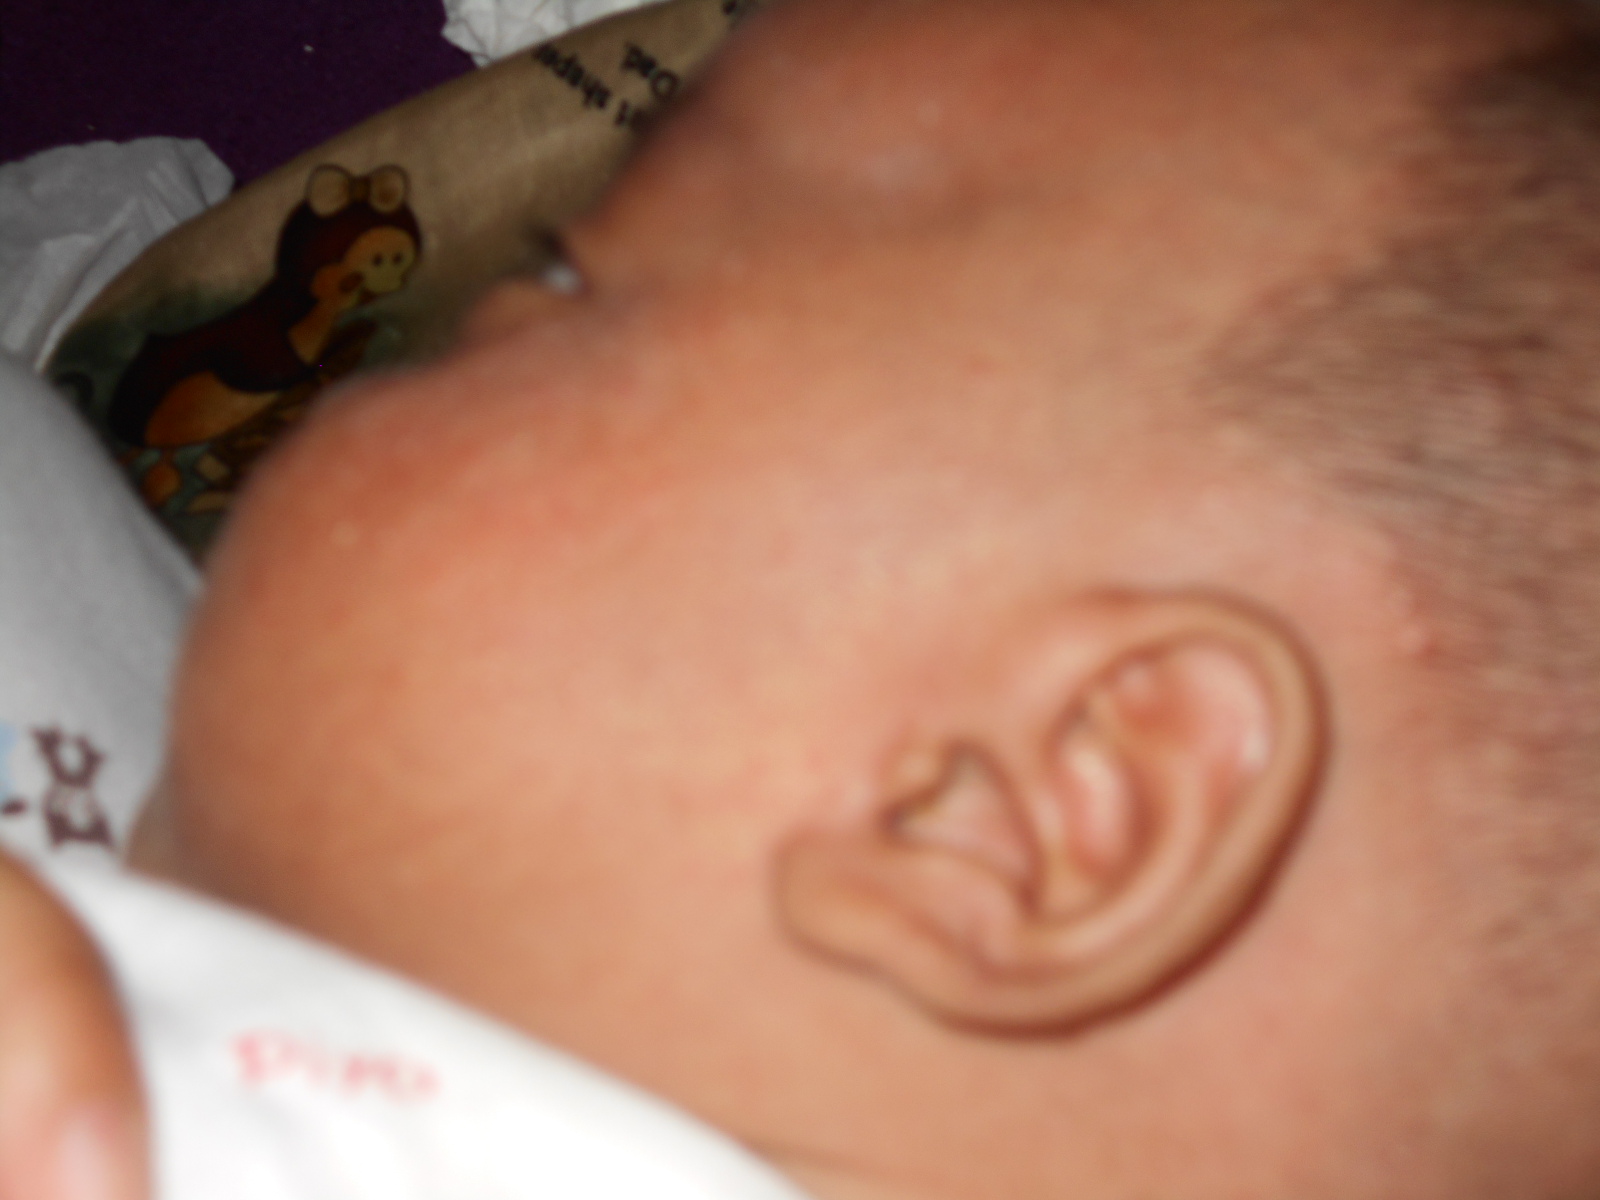 Telinga kiri Ahmad Azzam Halimi yang berbentuk lafadz Allah itu...